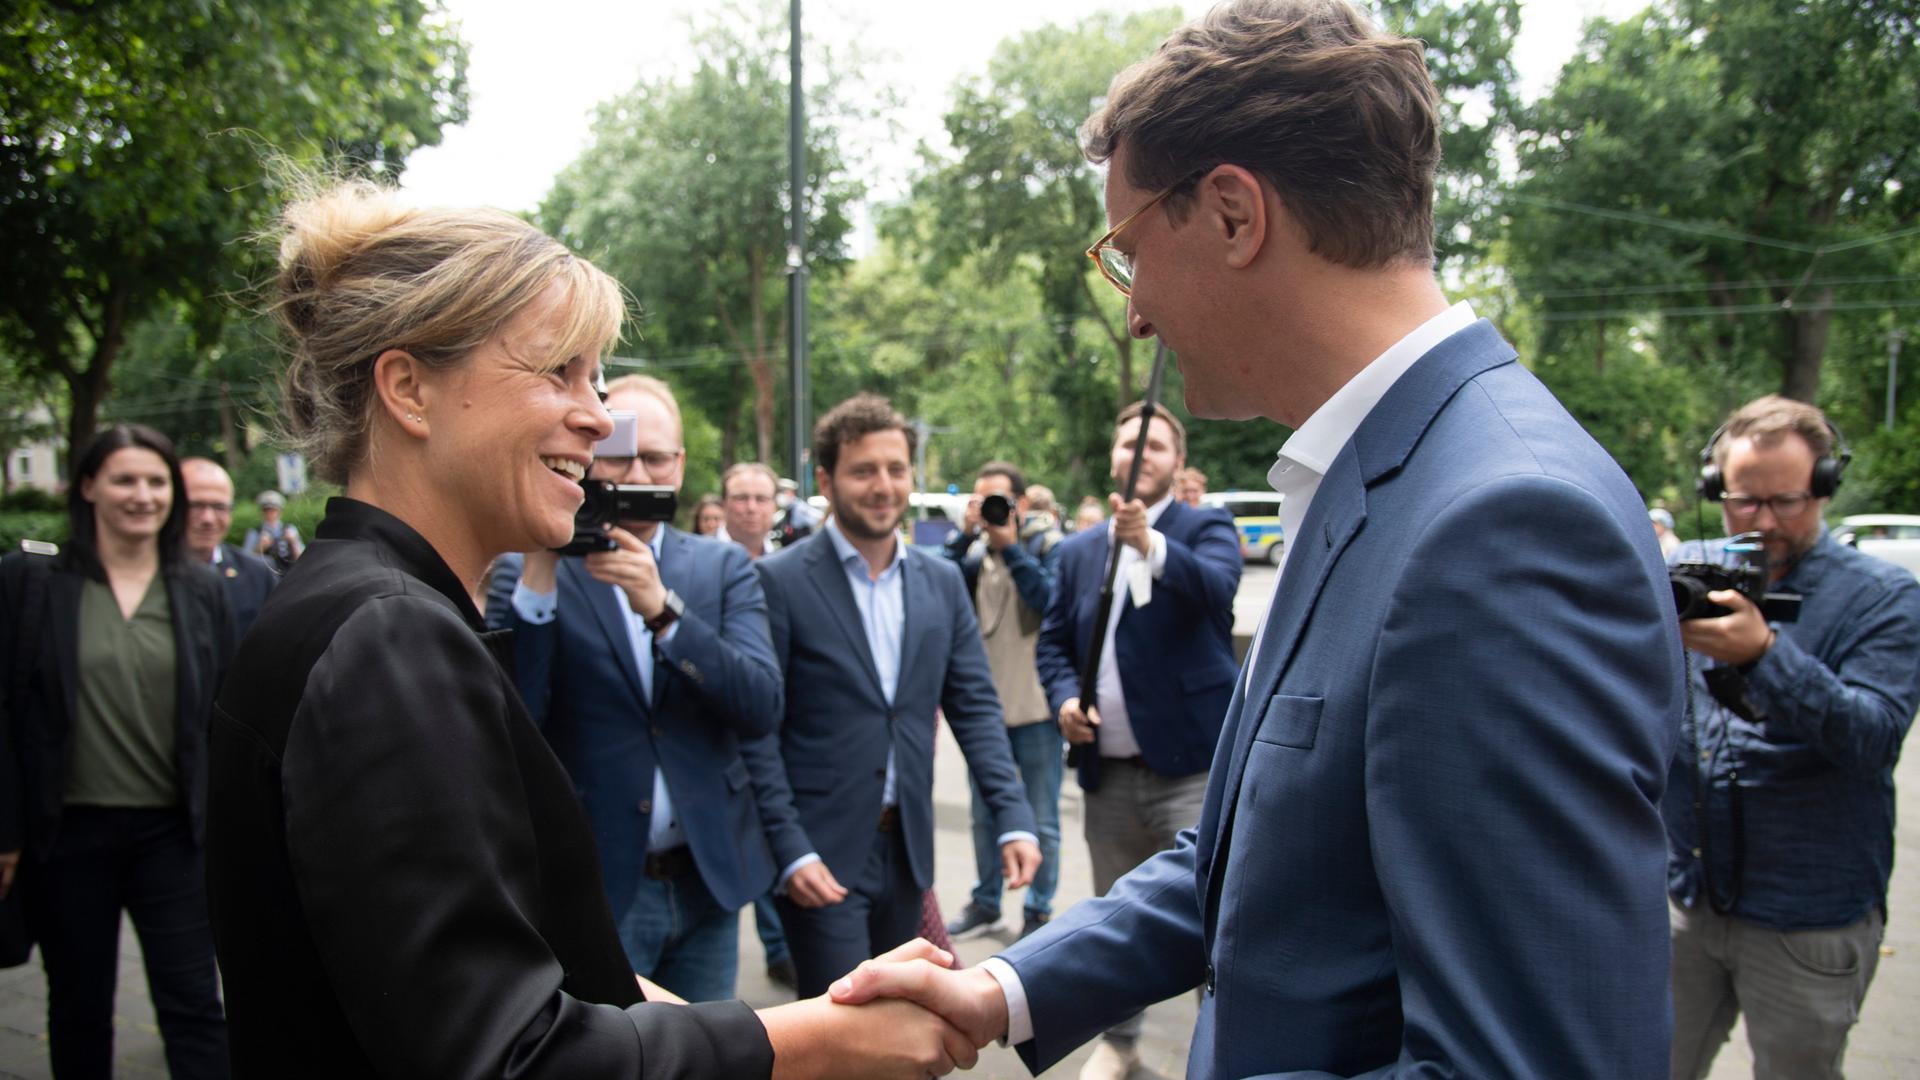 Auf dem Bild sieht man die Grünen-Chefin Mona Neubaur und Minister-Präsident Hendrik Wüst. Sie geben sich die Hand. 